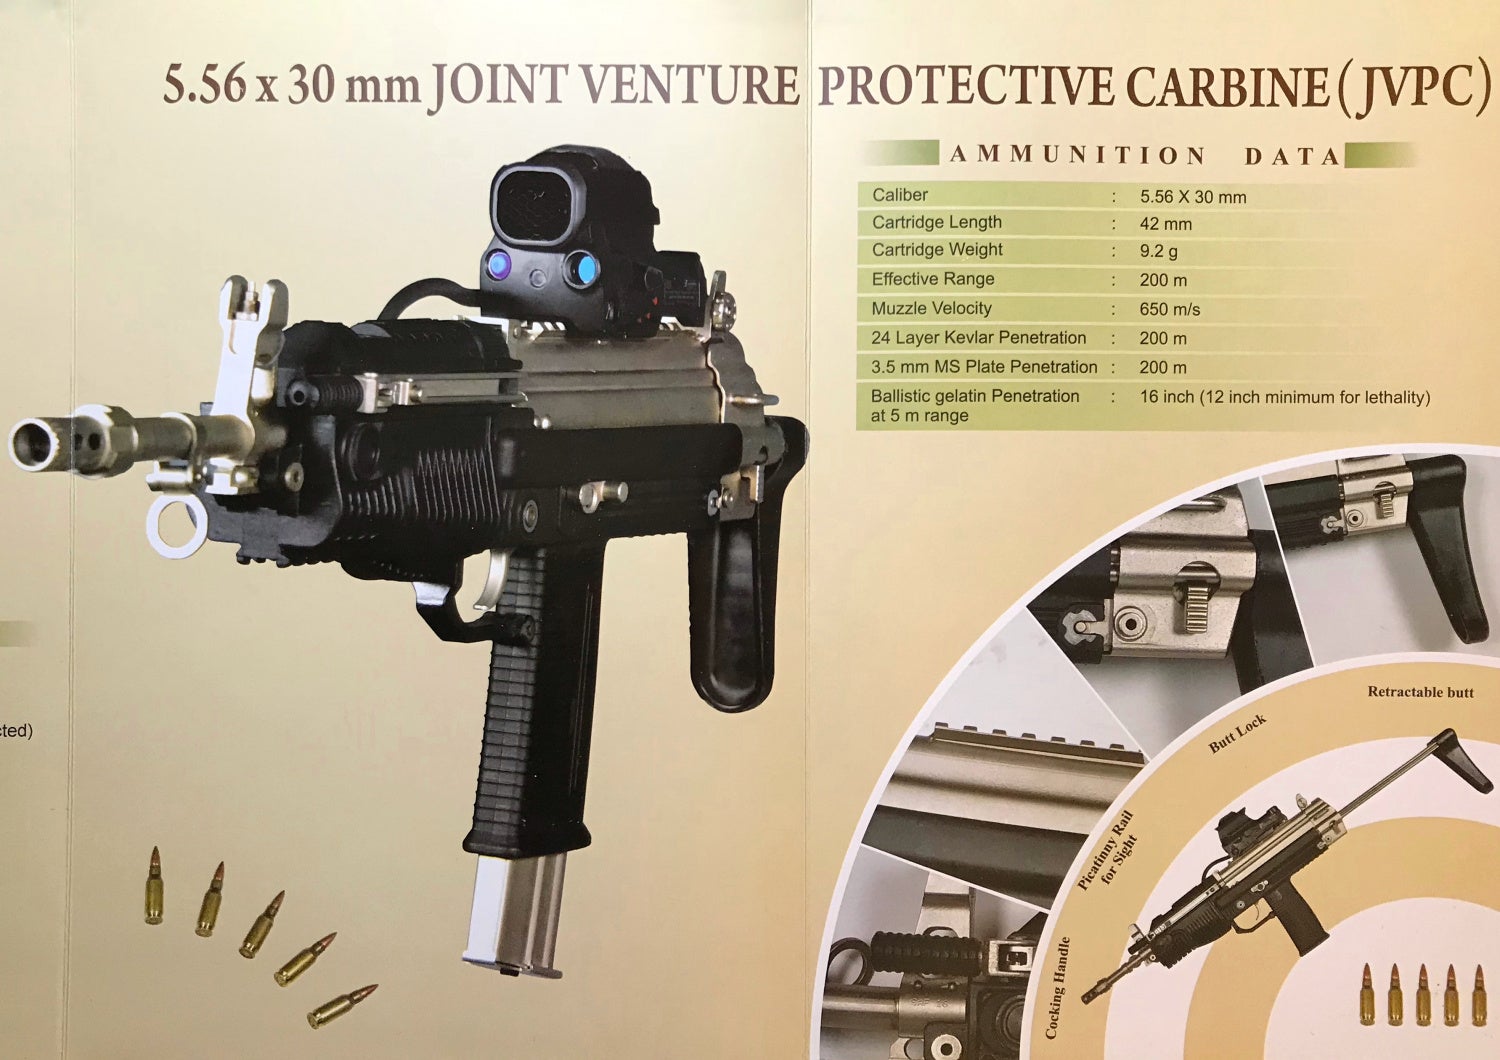 JVPC weapons specs